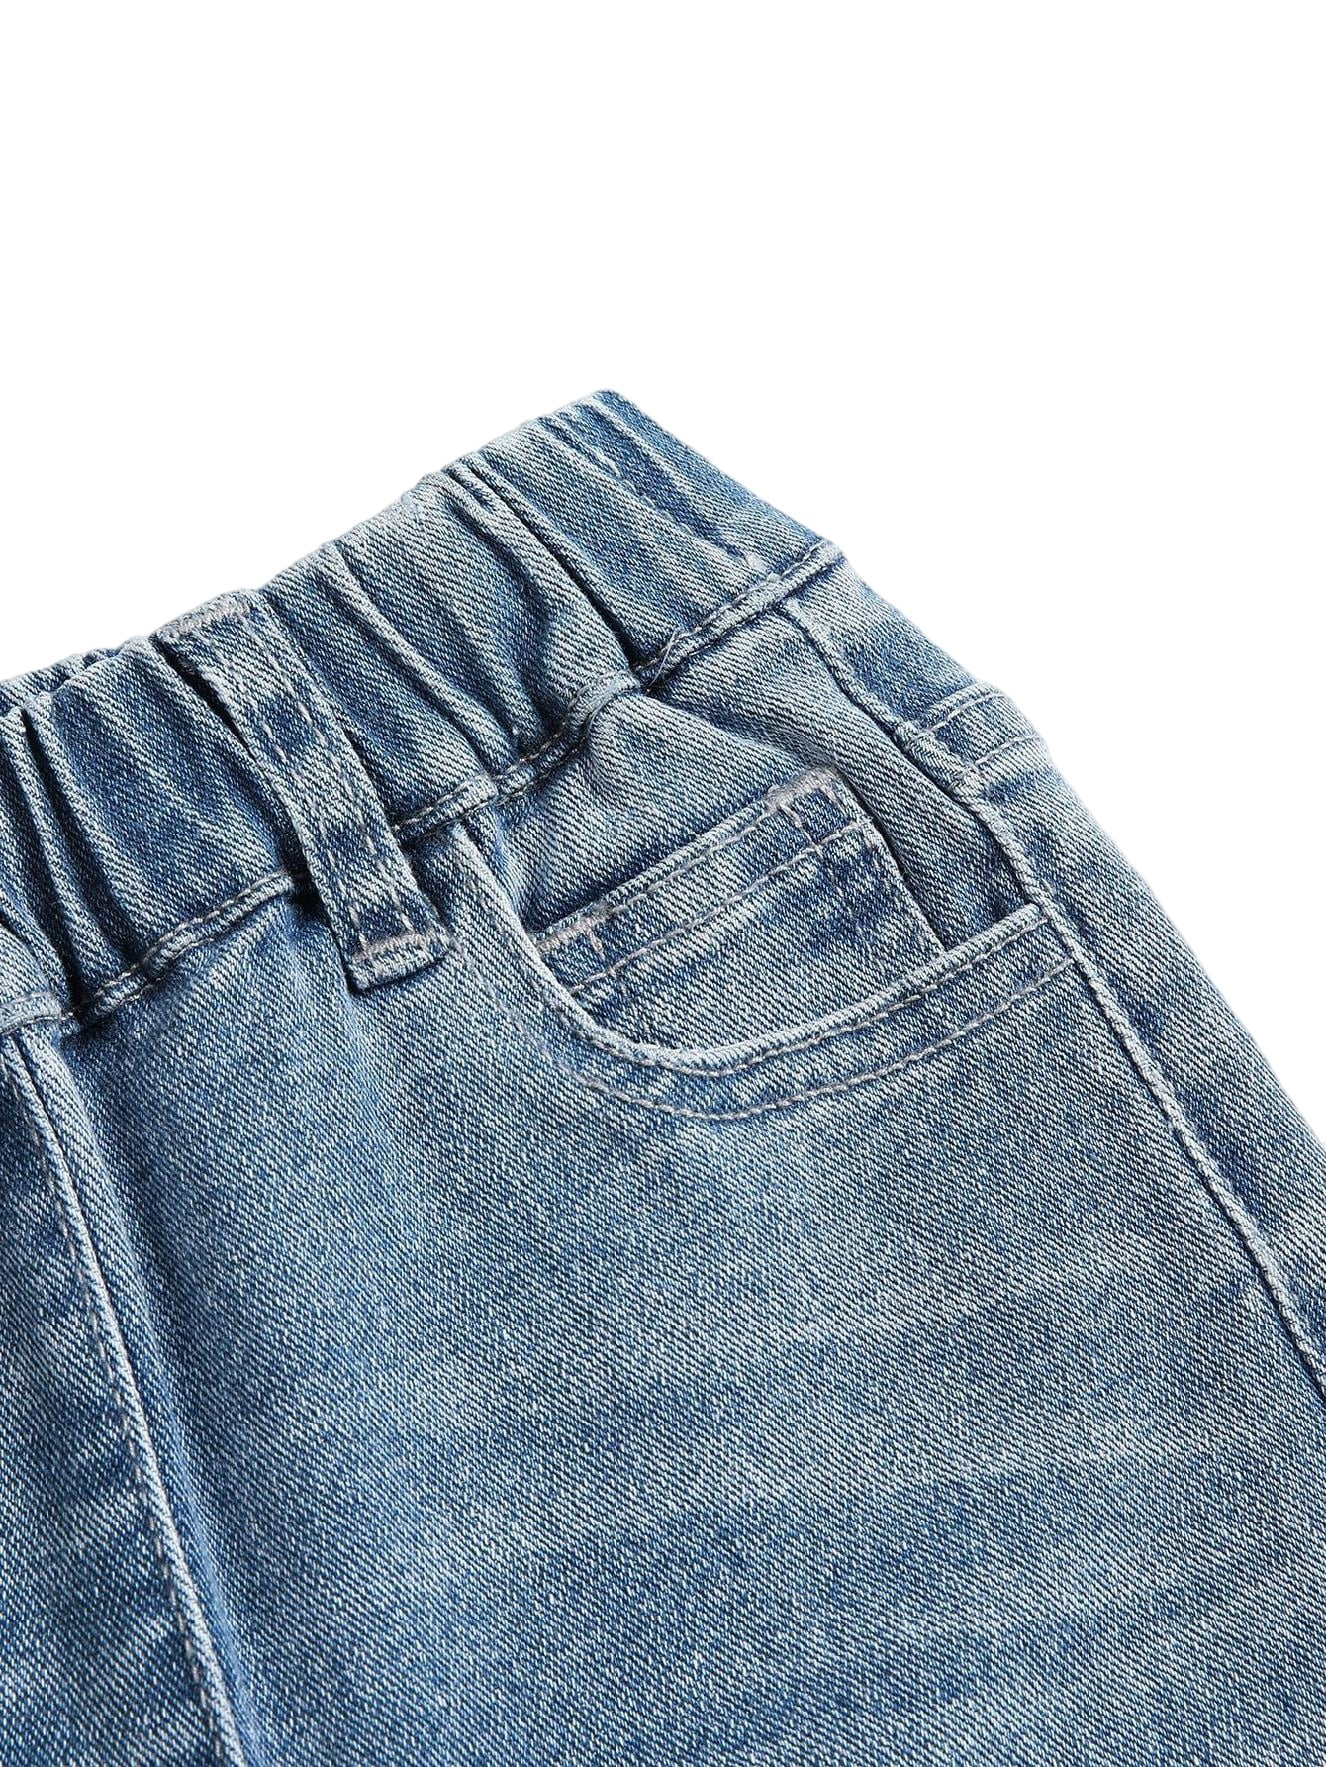 Plain Tapered/Carrot Medium Wash Toddler Girls Jeans (Girl's) - Walmart.com